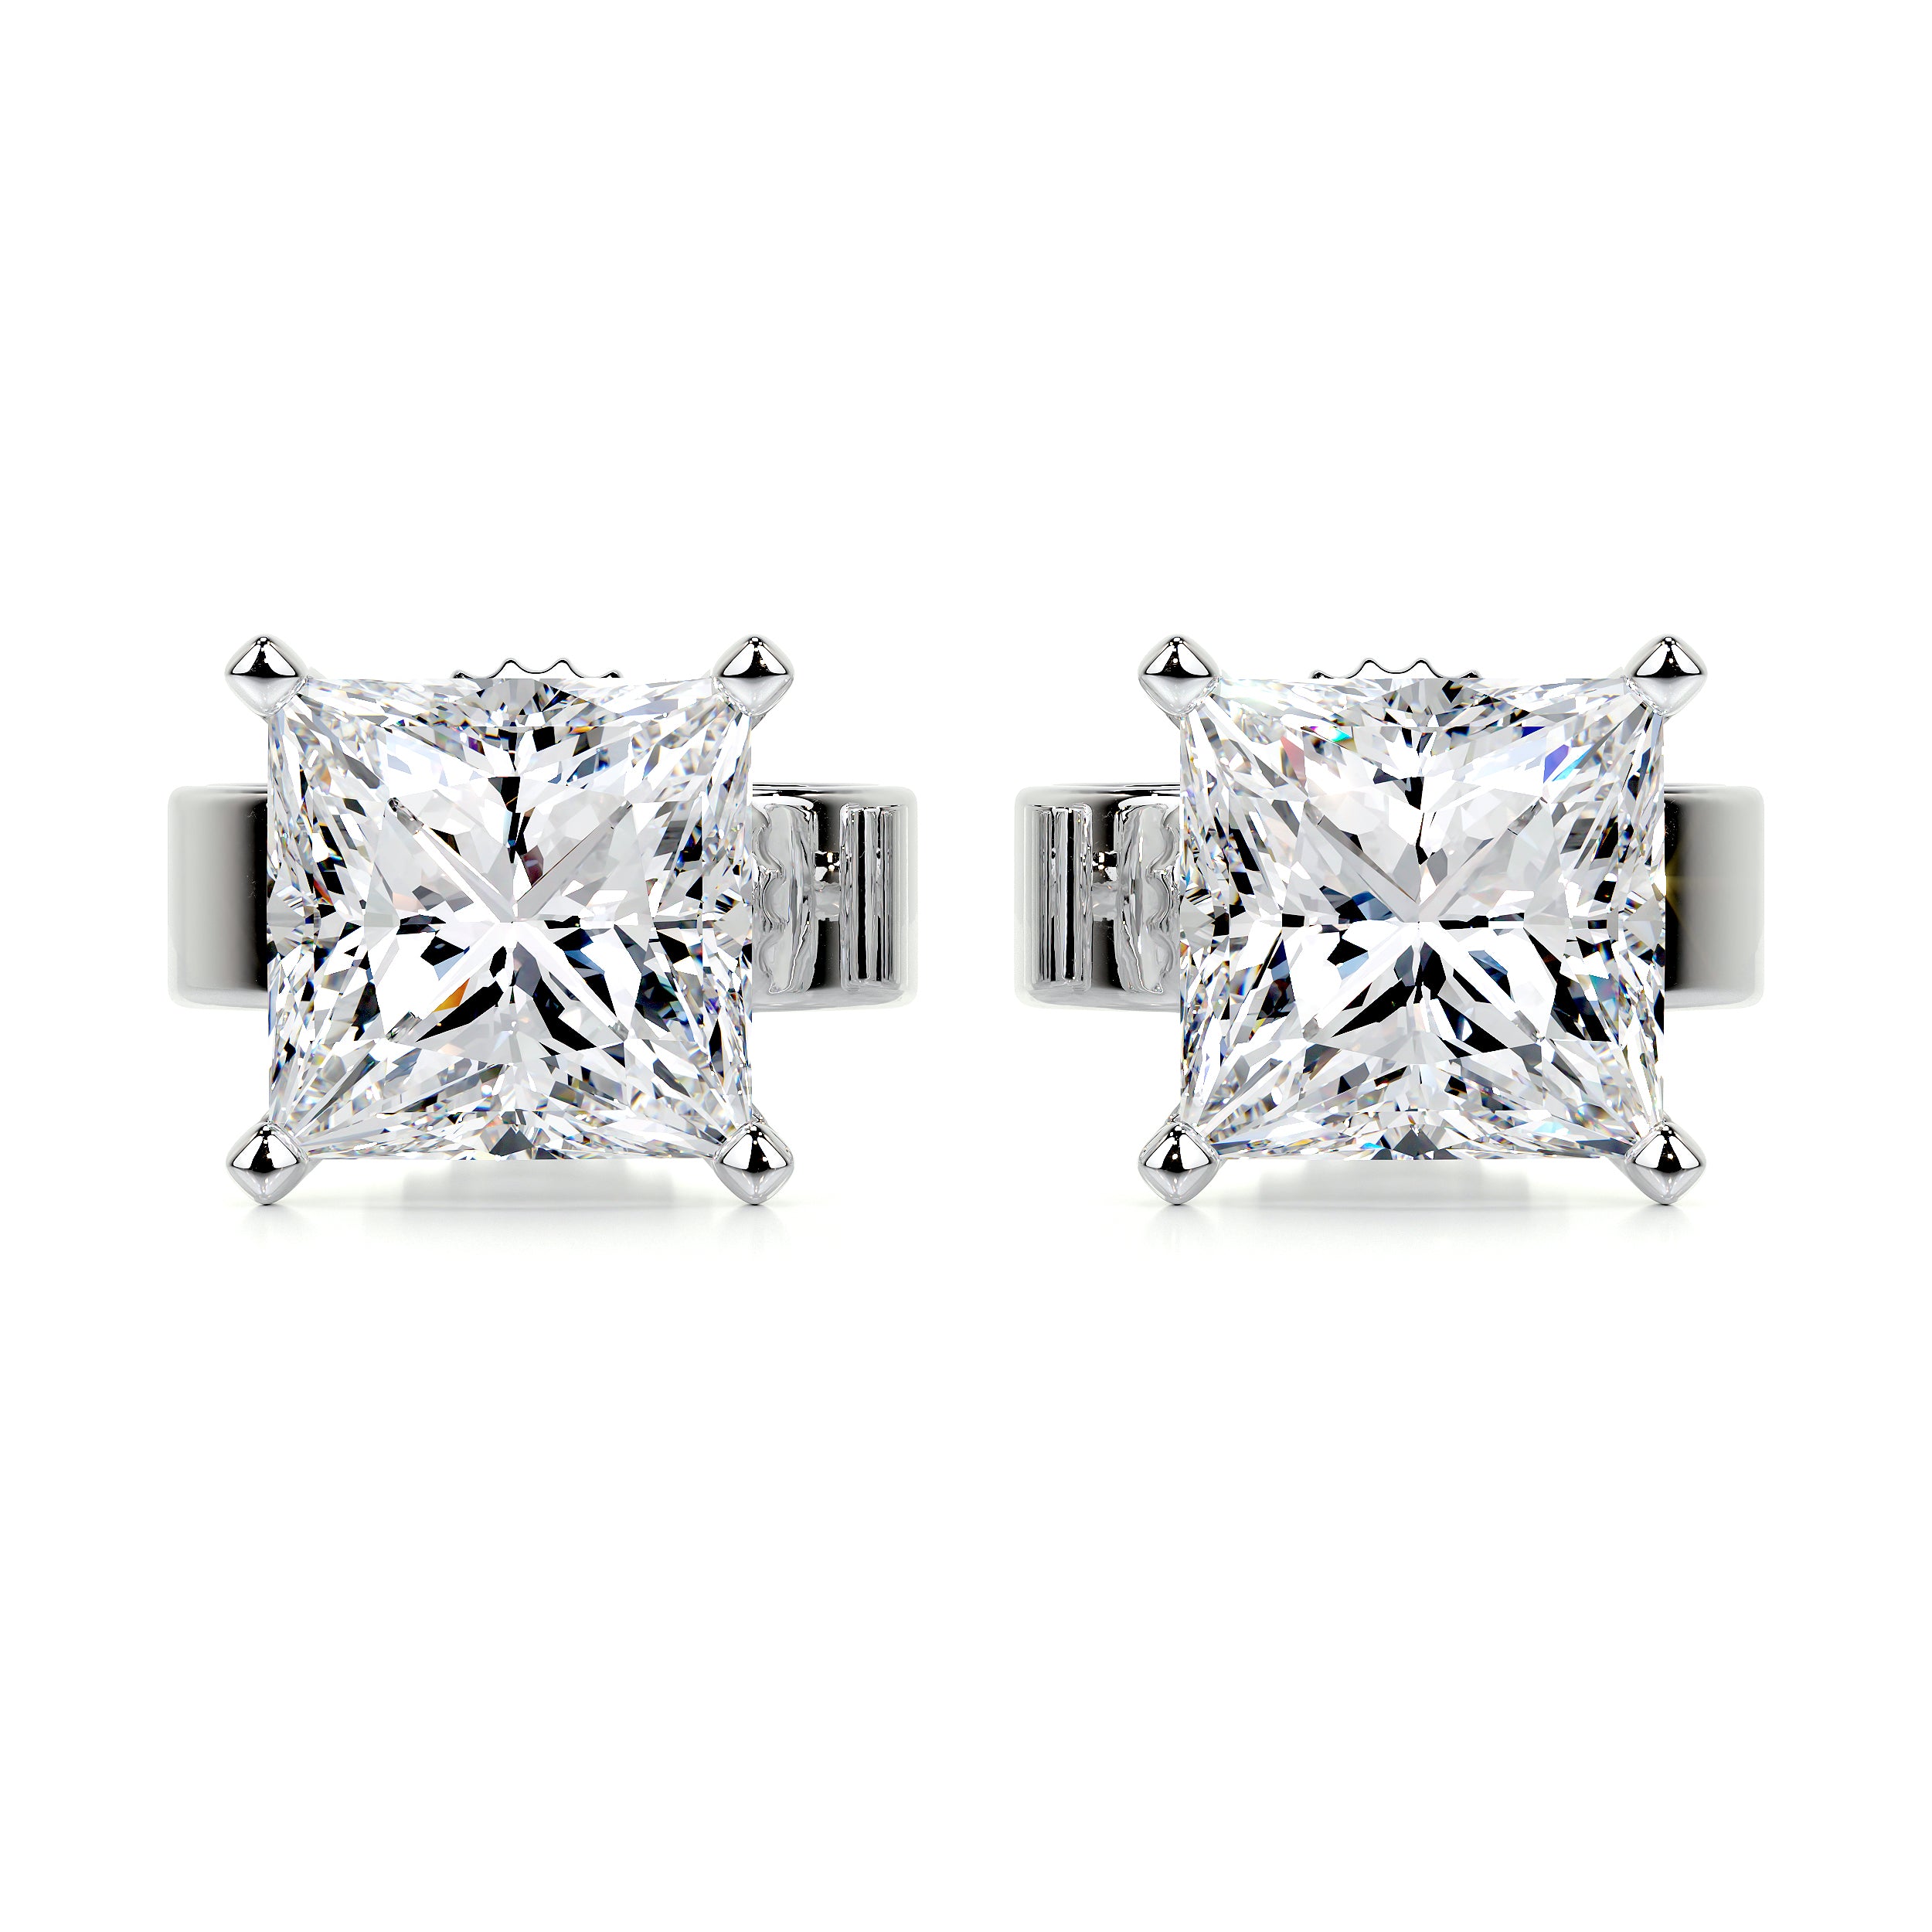 Jamie Diamond Earrings -14K White Gold